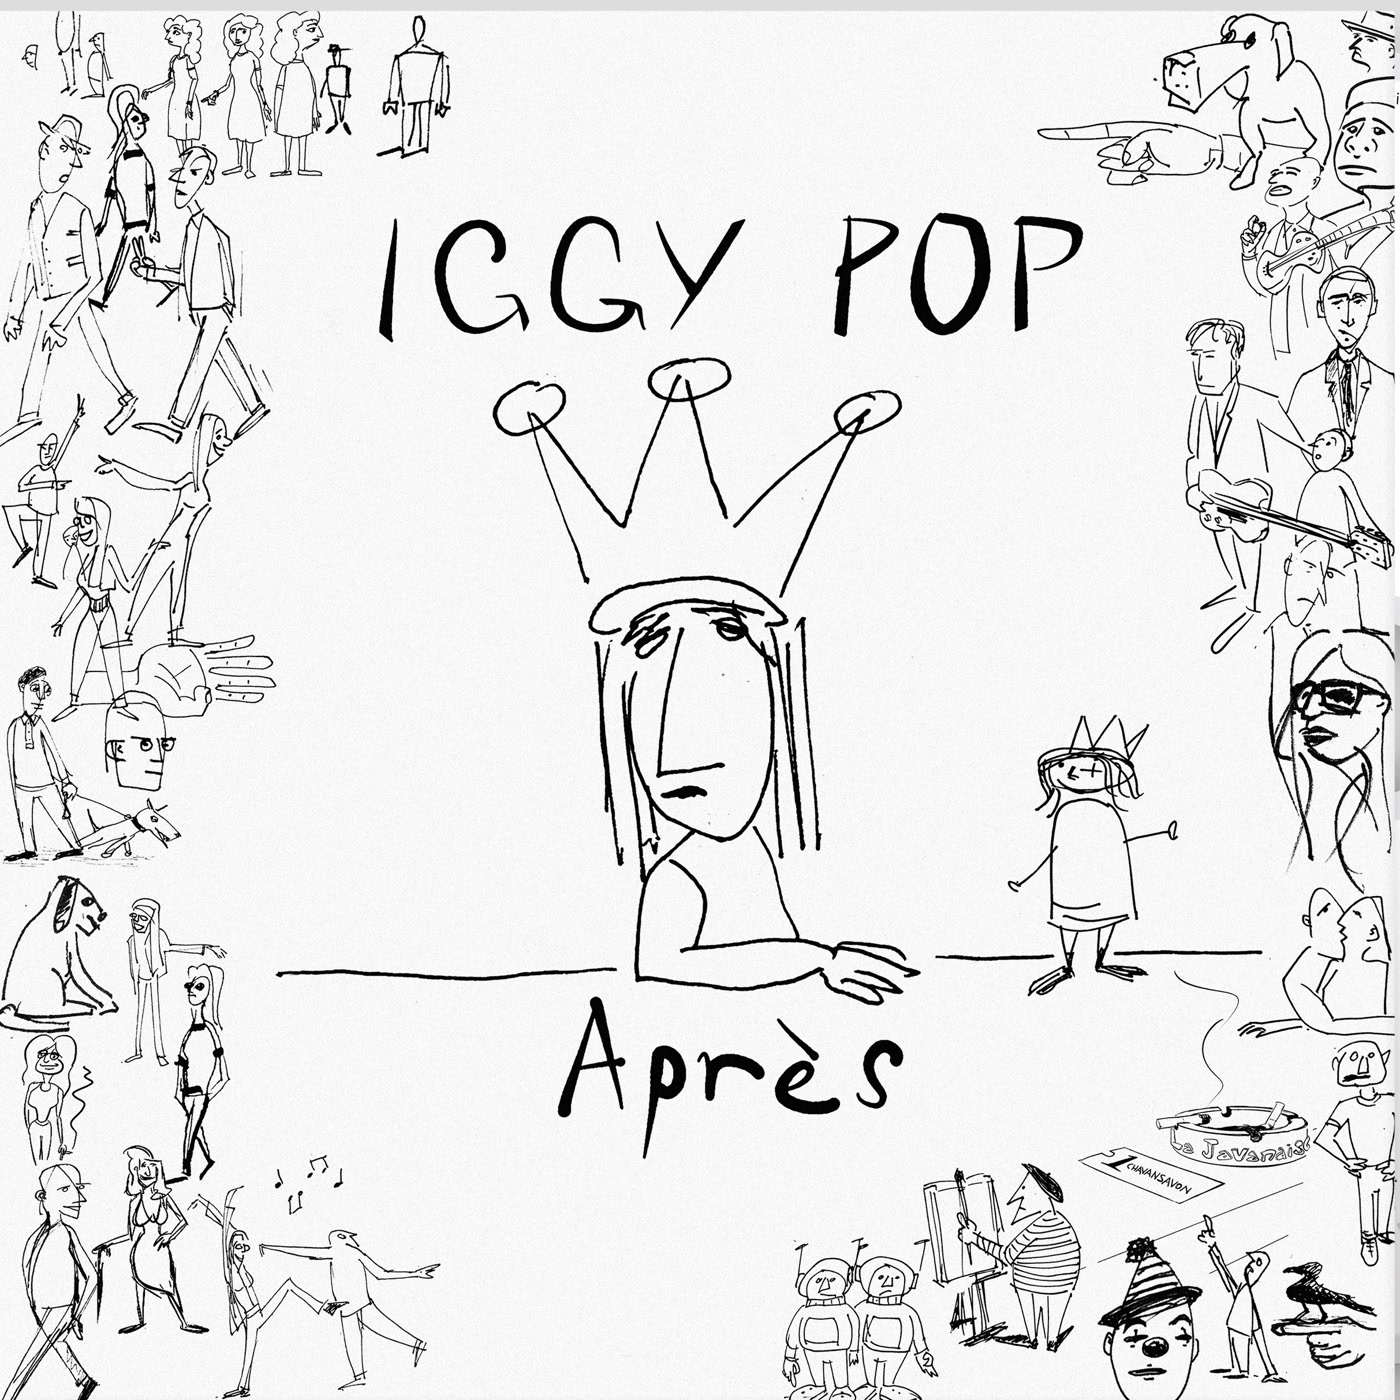 Iggy Pop - Apres (GM Editions) - Kudos Distribution